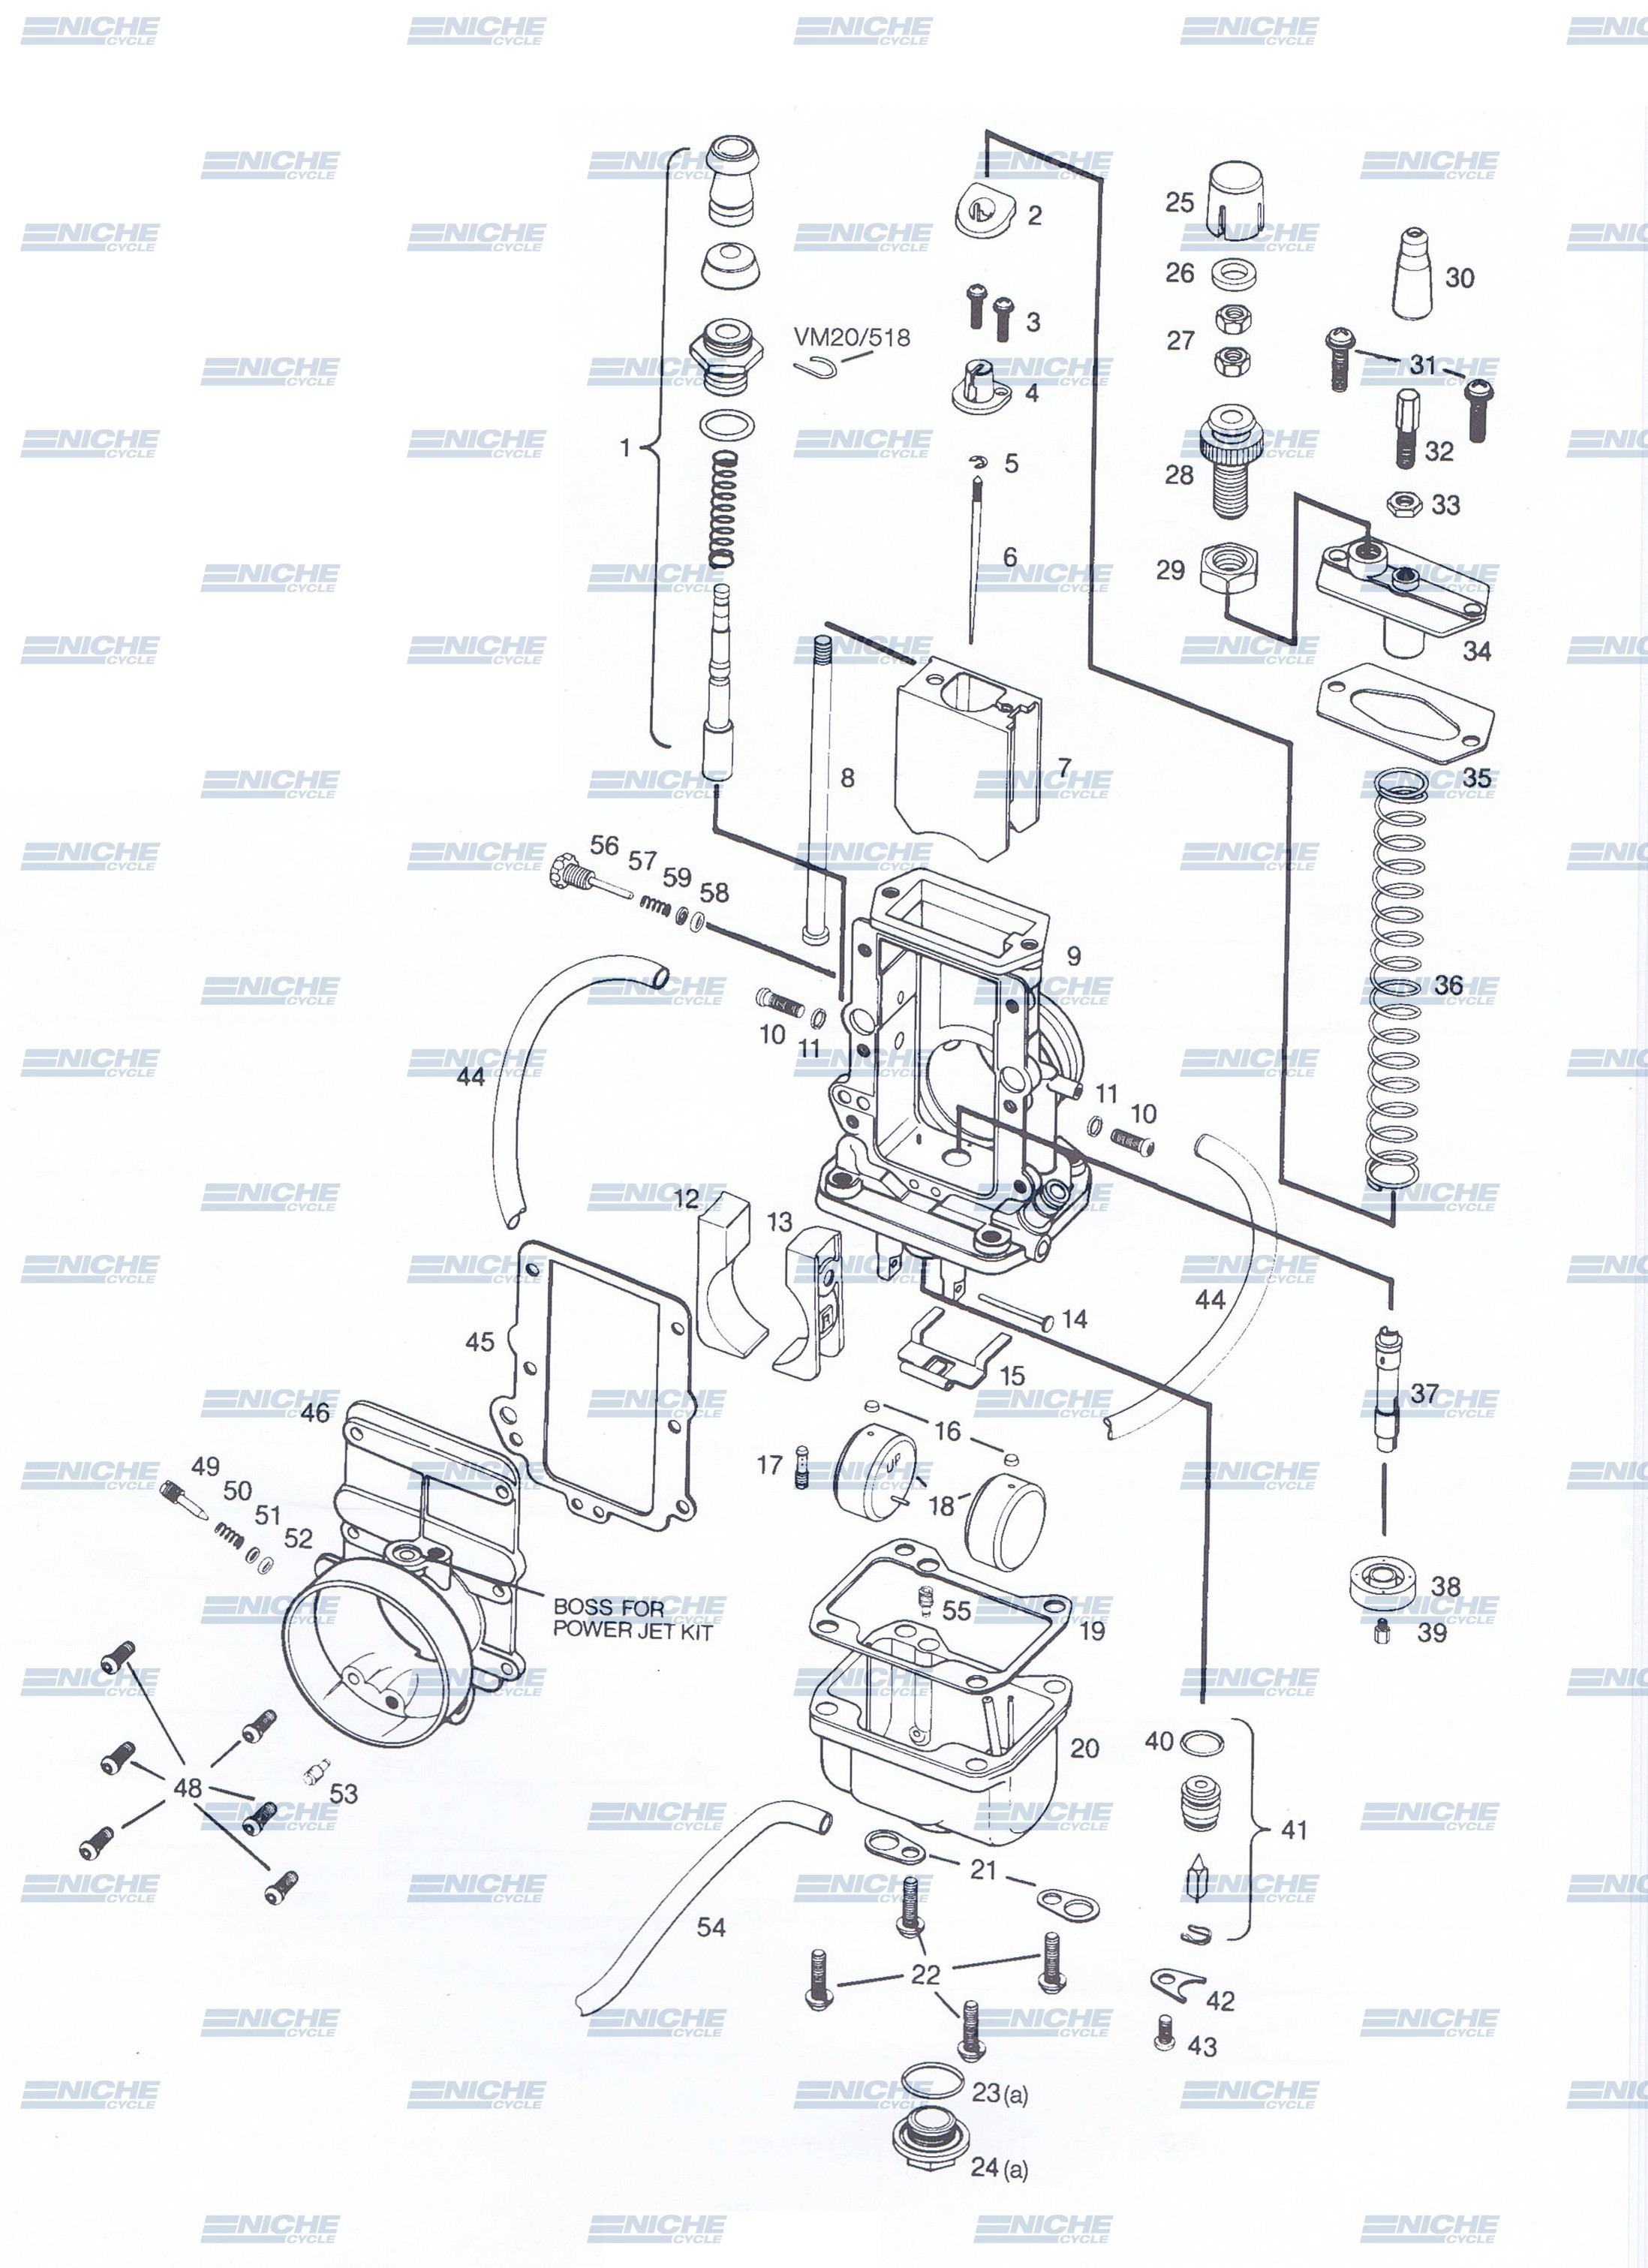 Mikuni TM32-1 Exploded View - Replacement Parts Listing TM32-1_parts_list